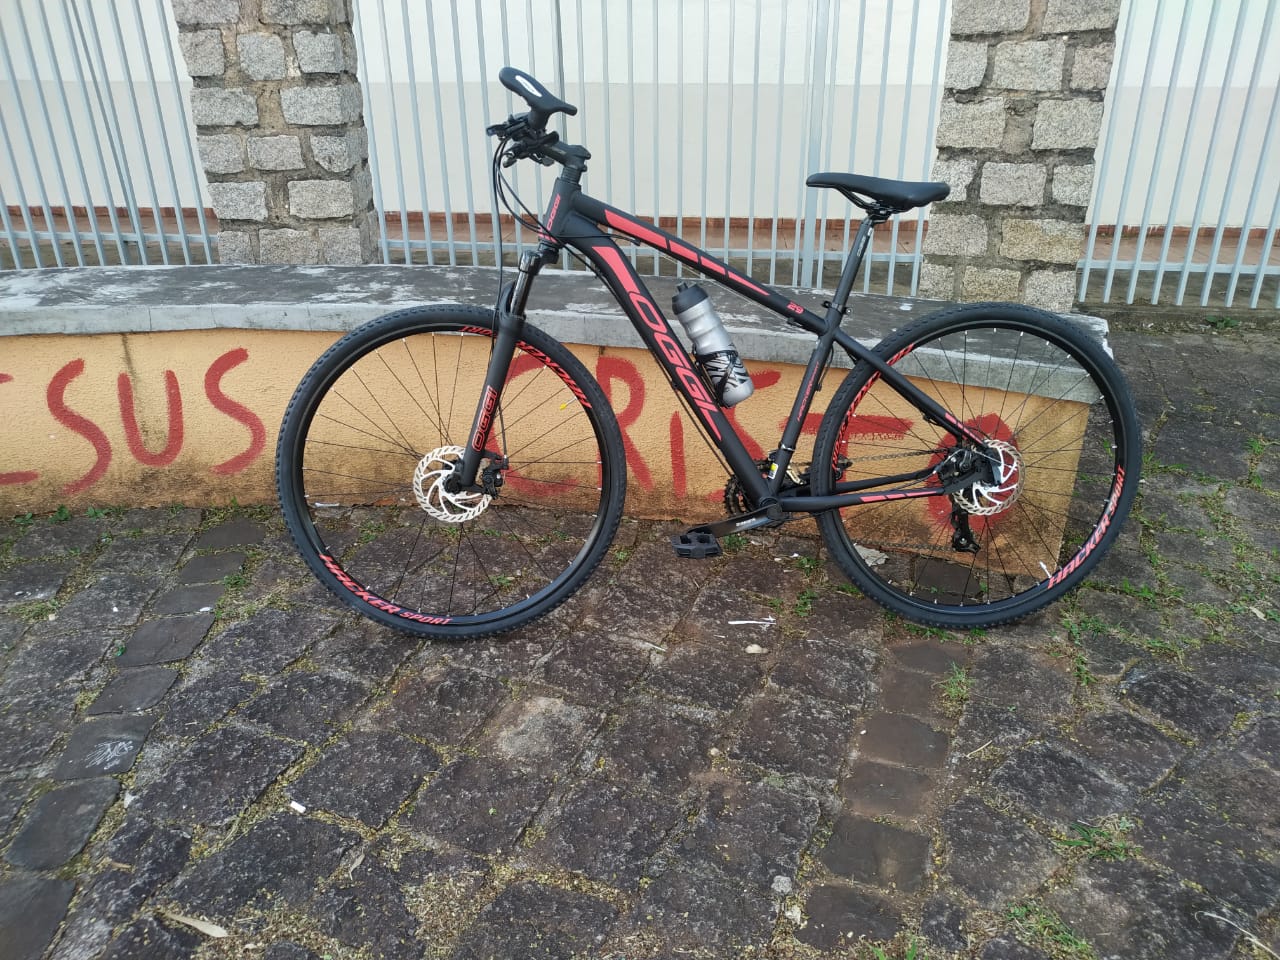 Bicicleta é furtada em Apucarana; ciclista planejava viagem com a bike